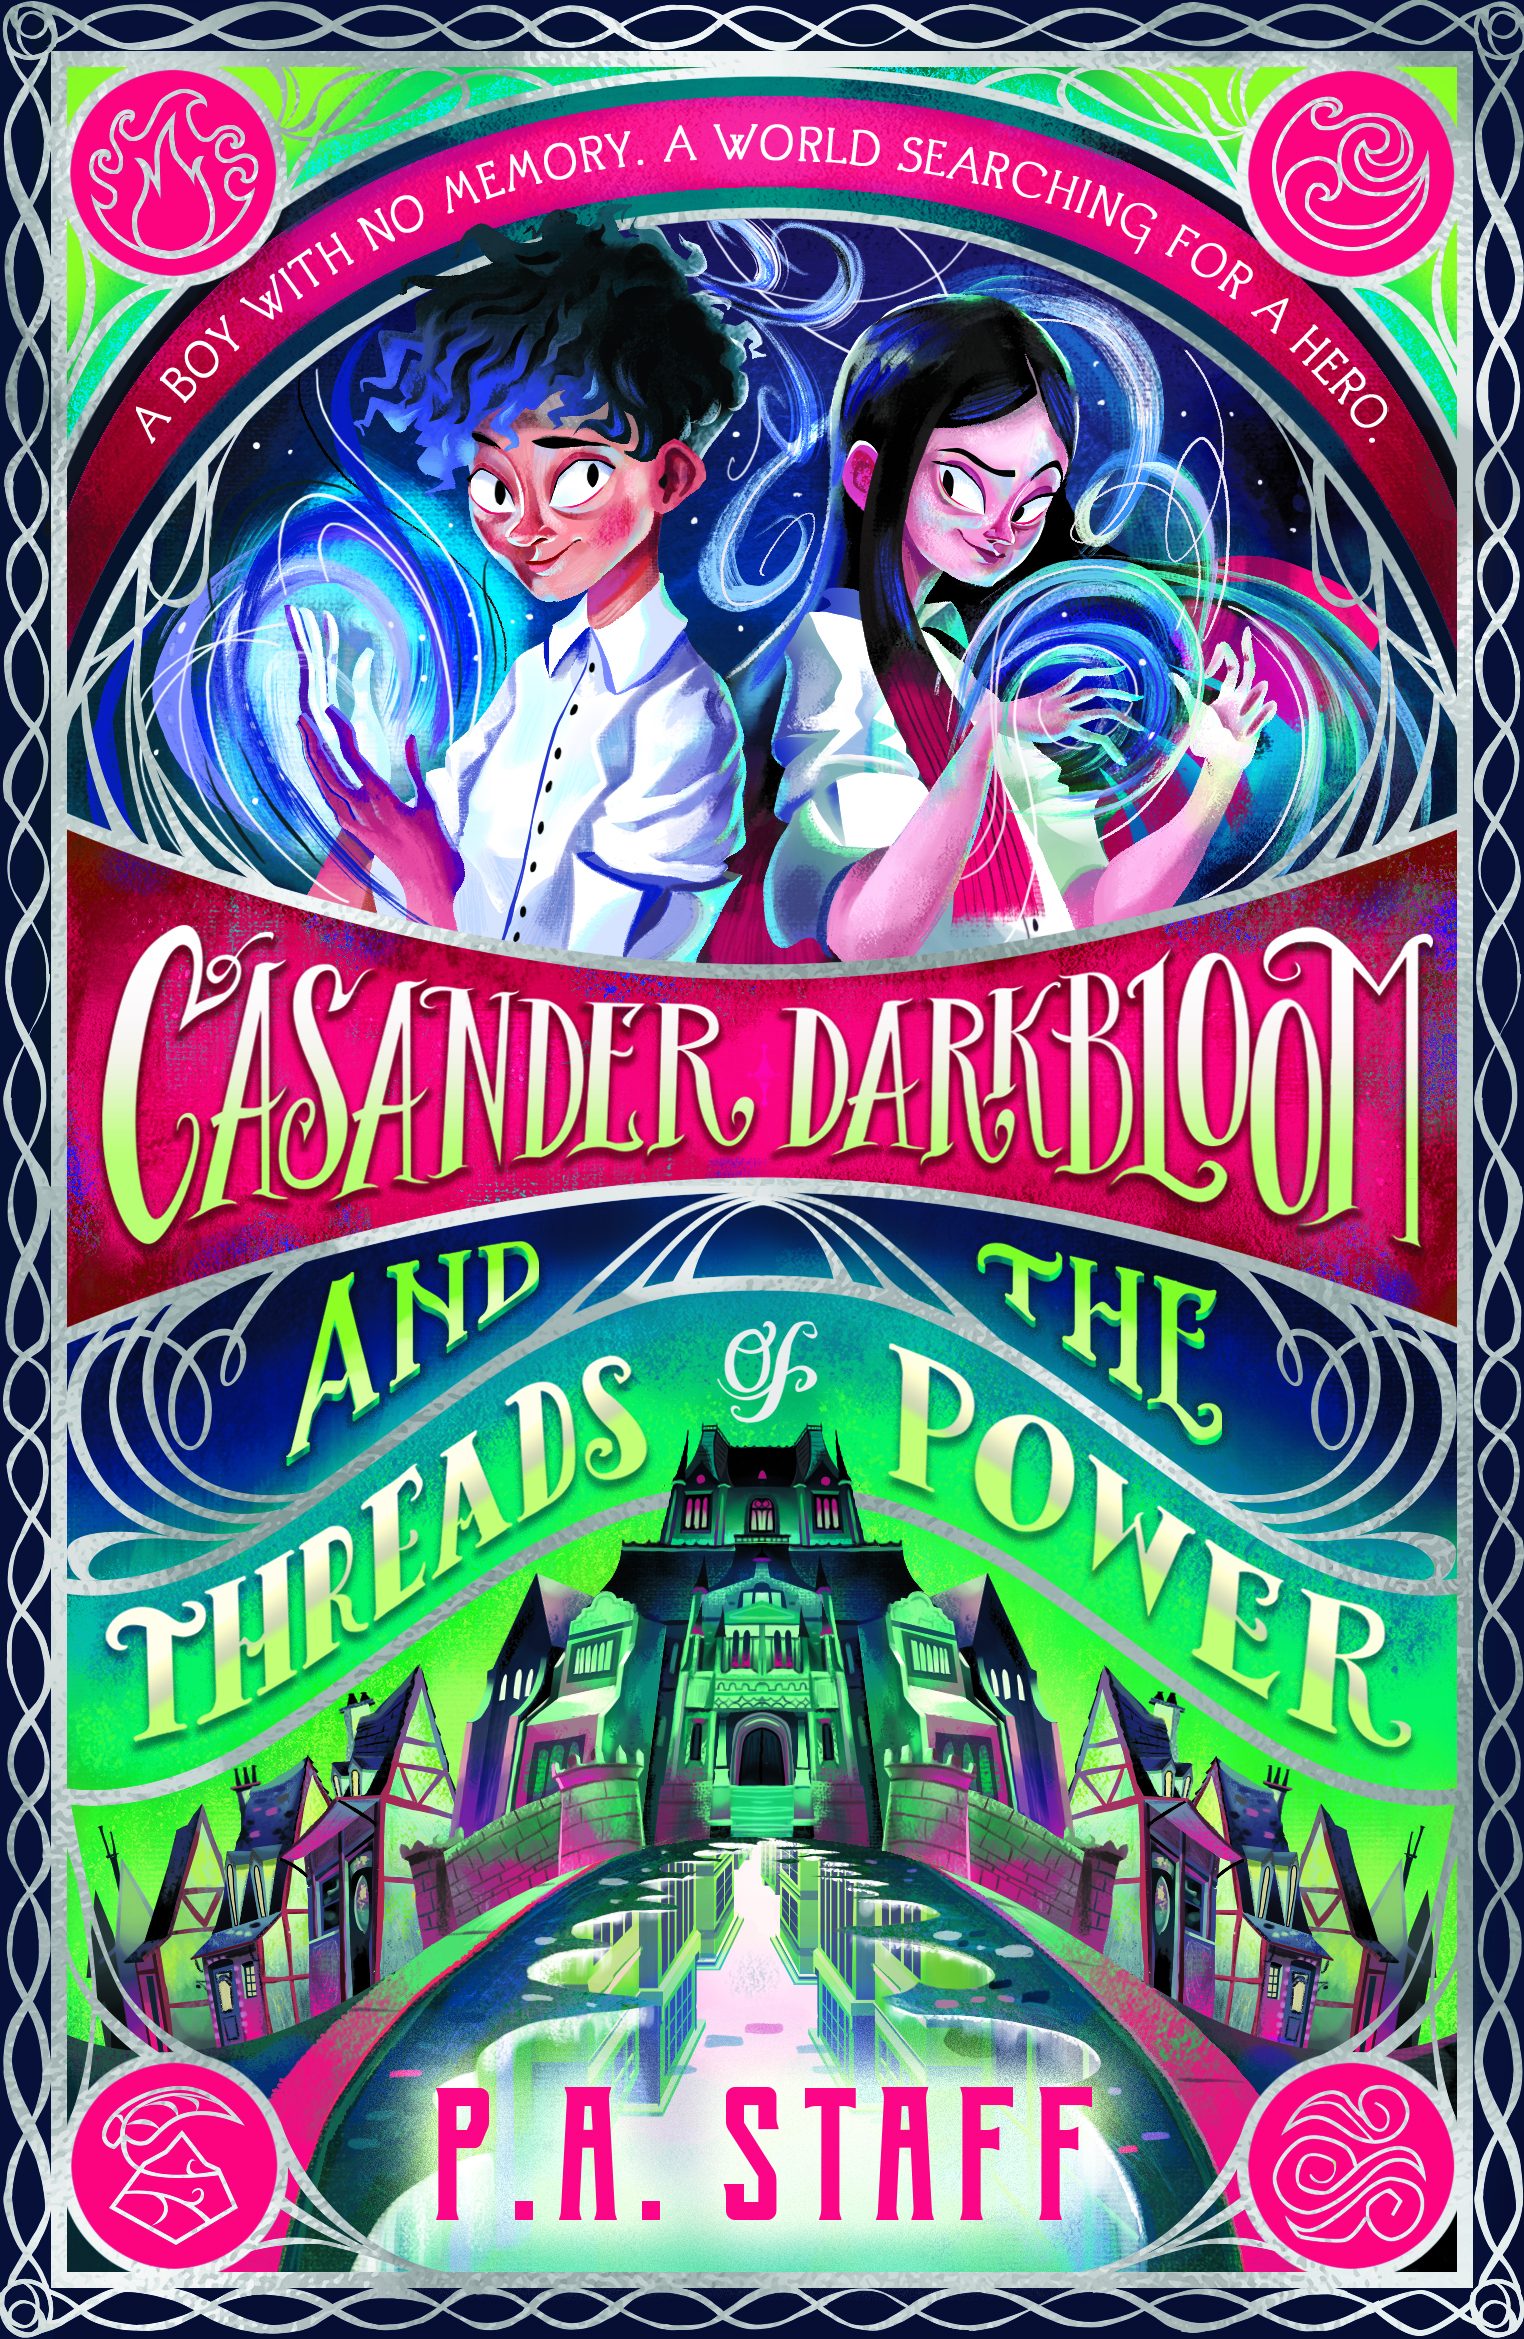 Casander-Darkbloom-and-the-Threads-of-Power